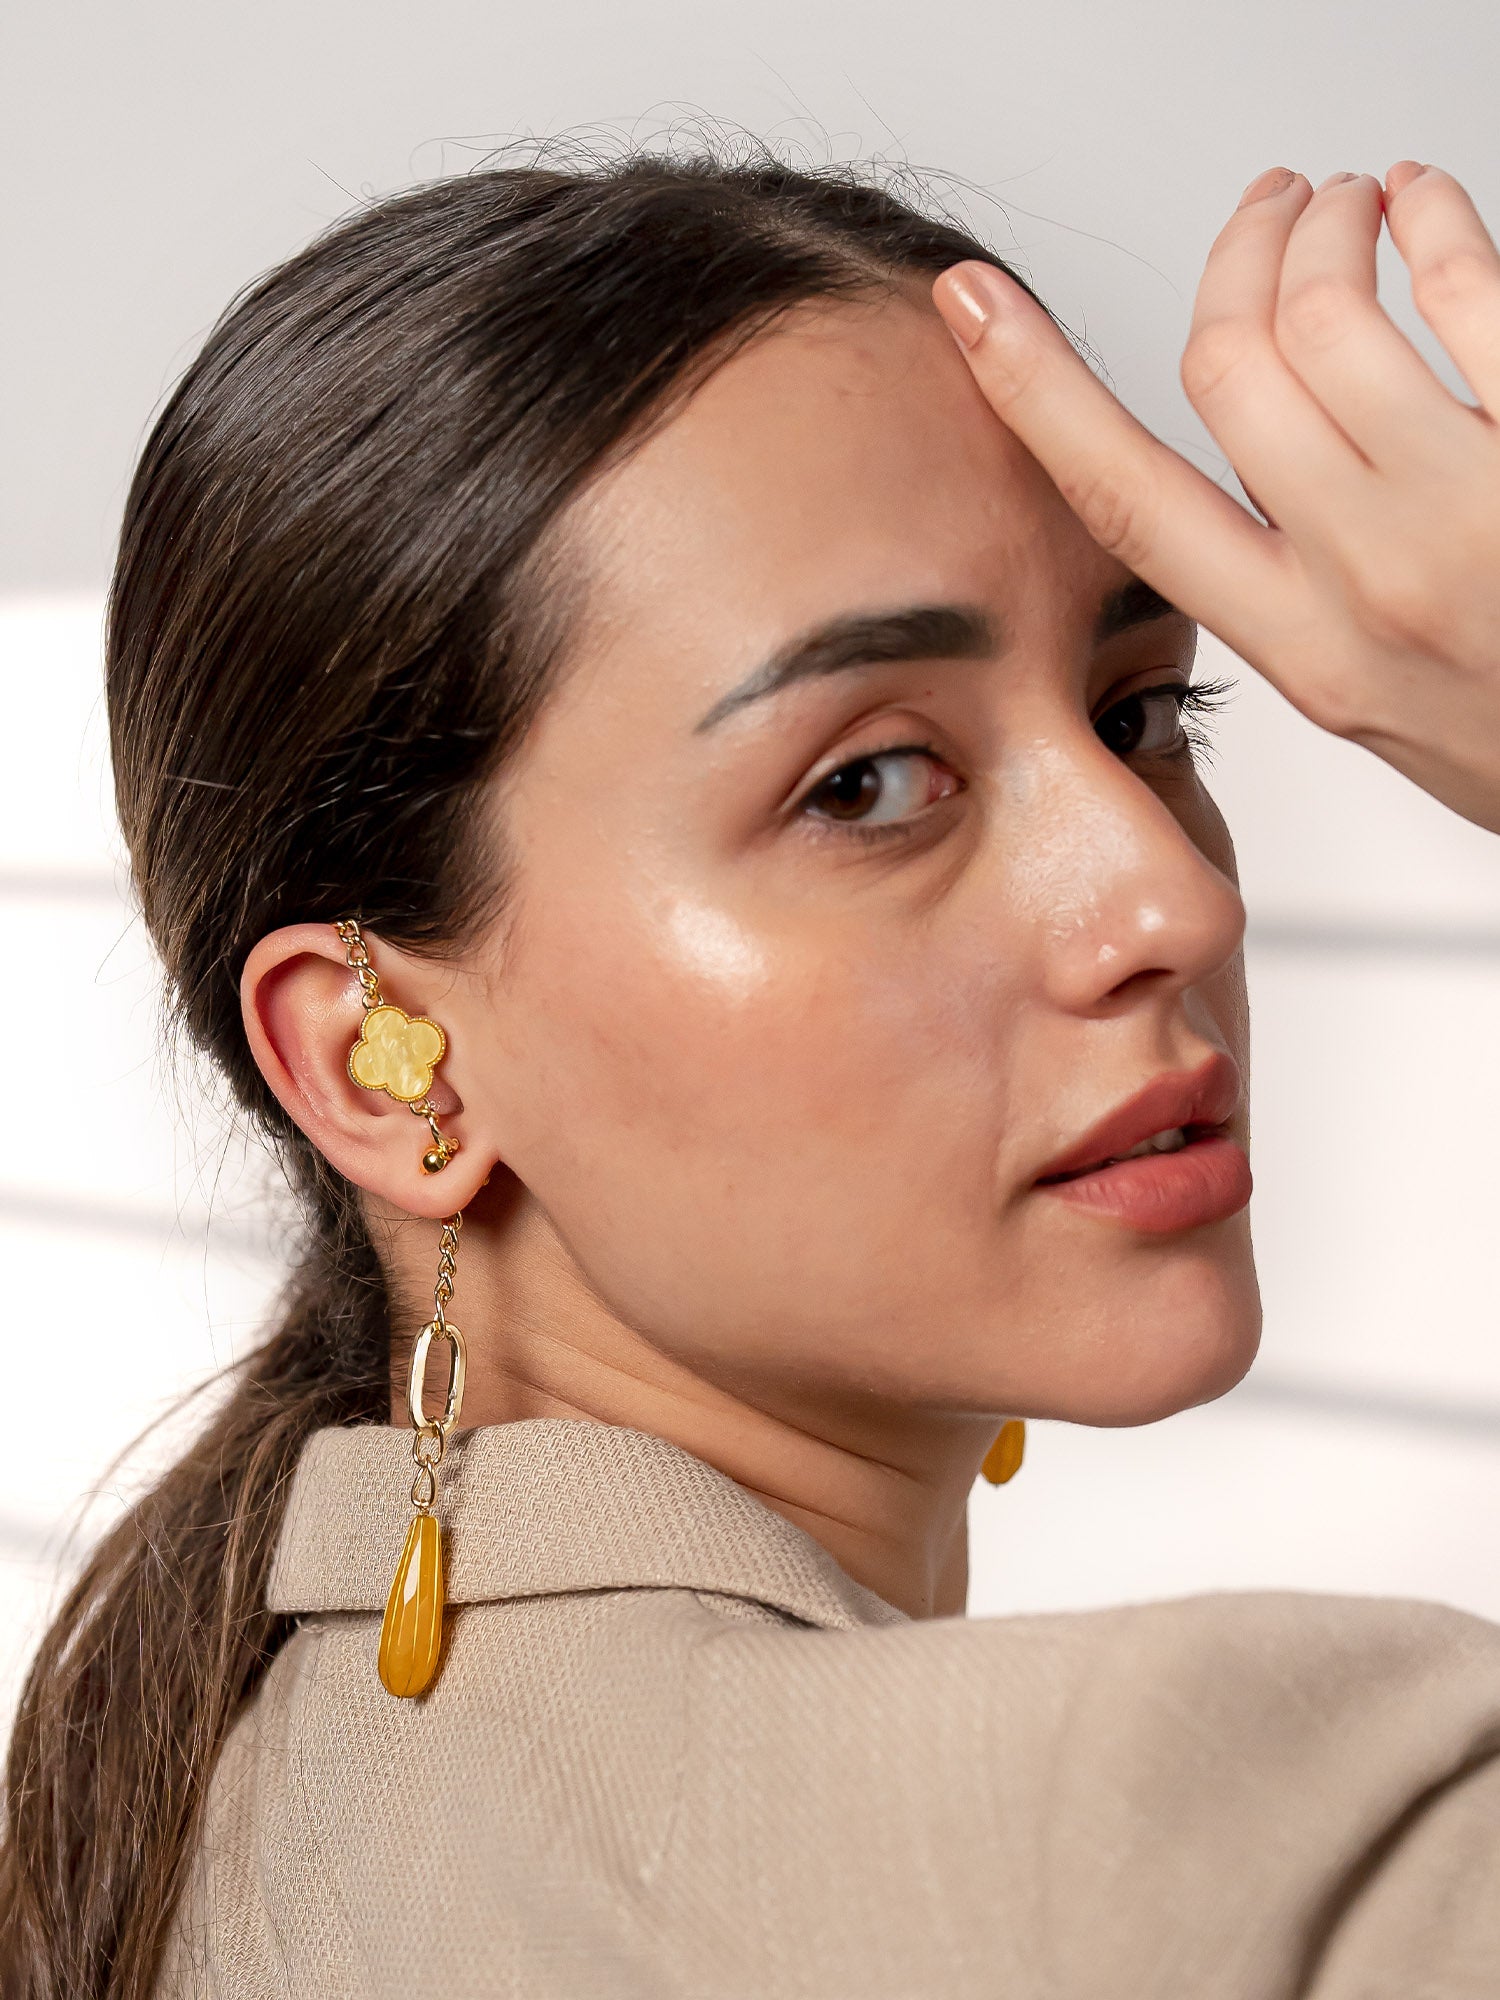 Shop for Ear Cuff Earrings Online